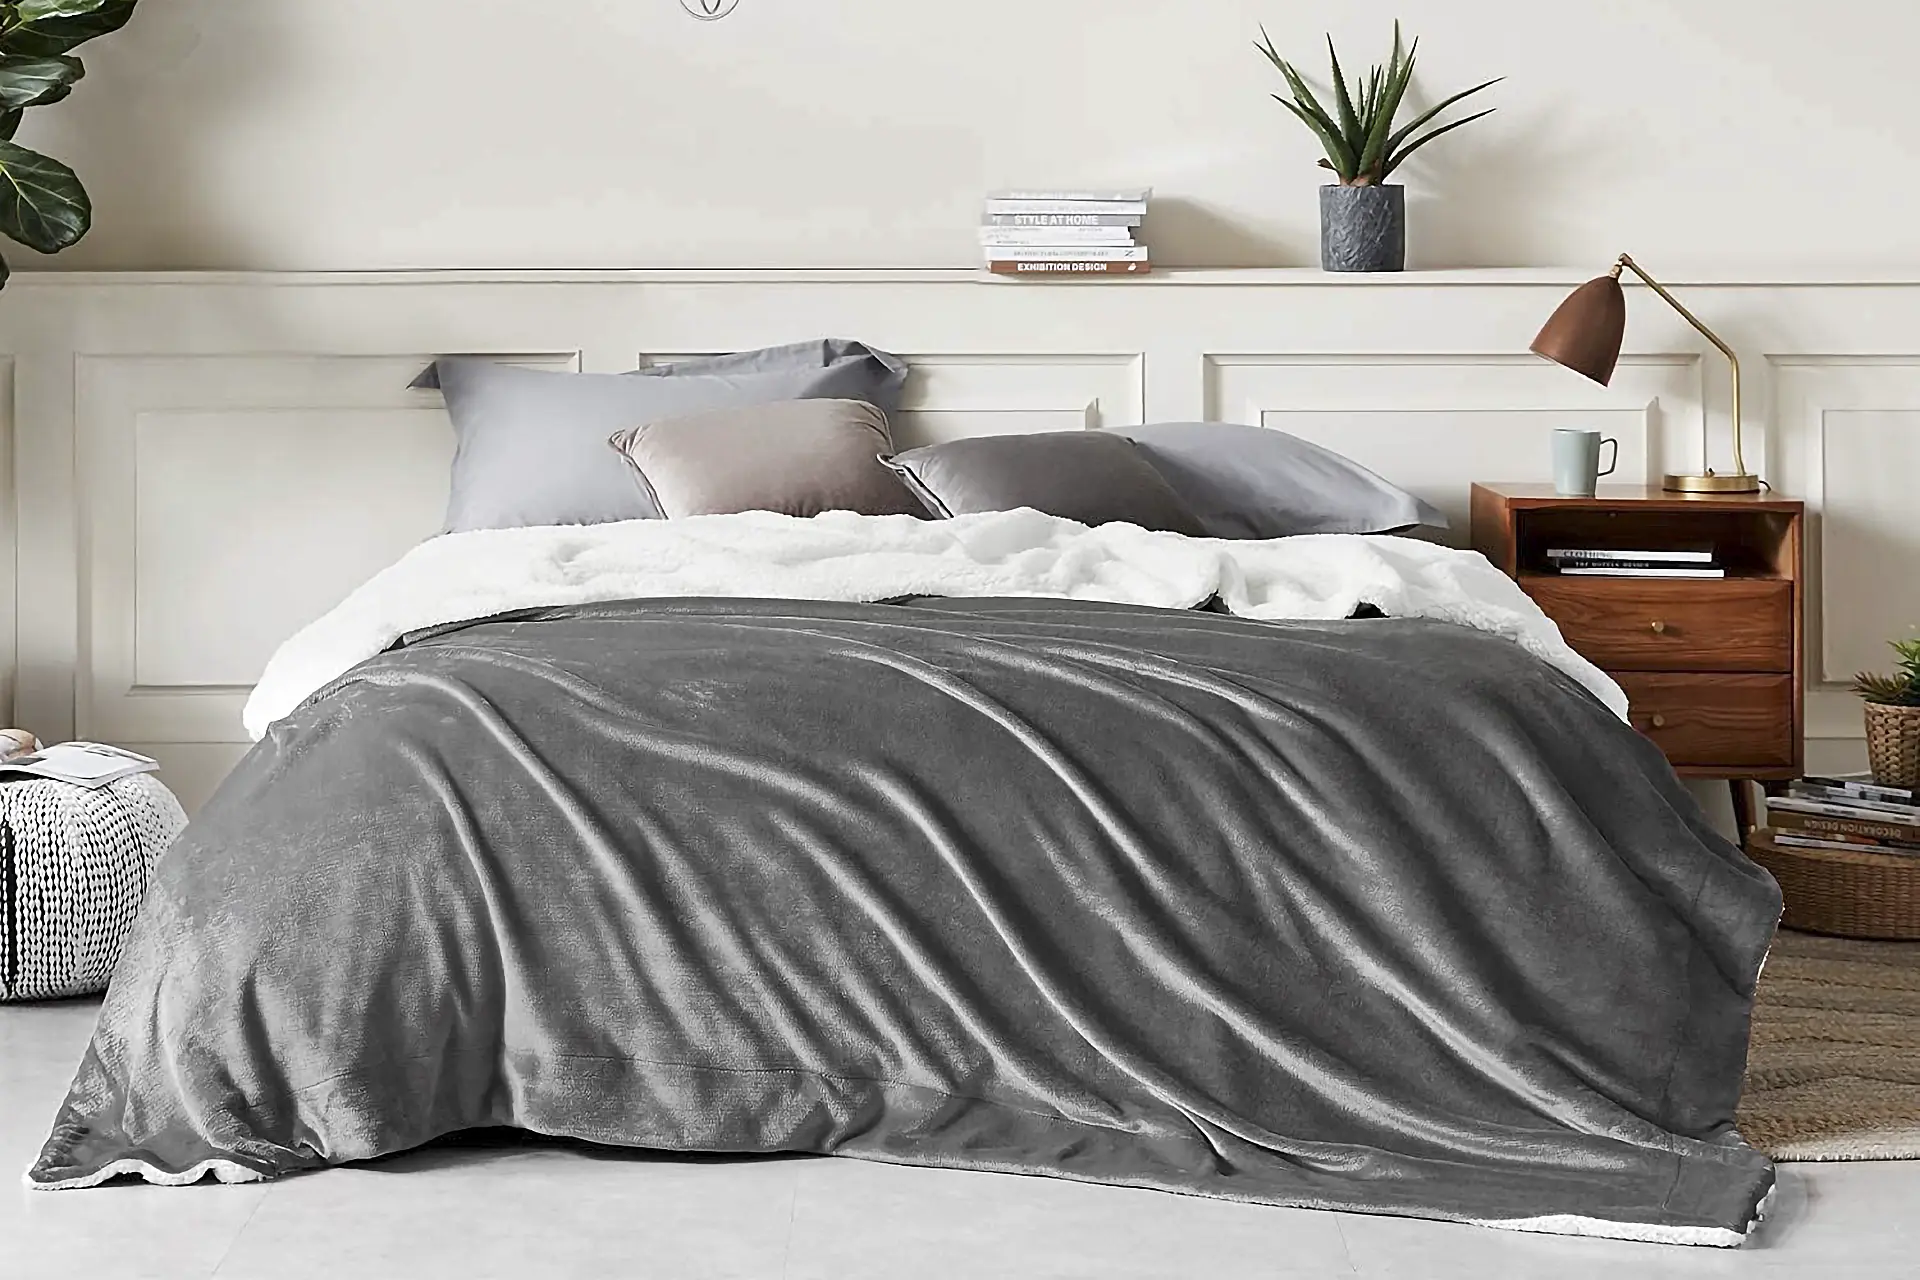 En este momento estás viendo Mantas y cobertores: Encuentra las mejores opciones para abrigarte y decorar tu hogar